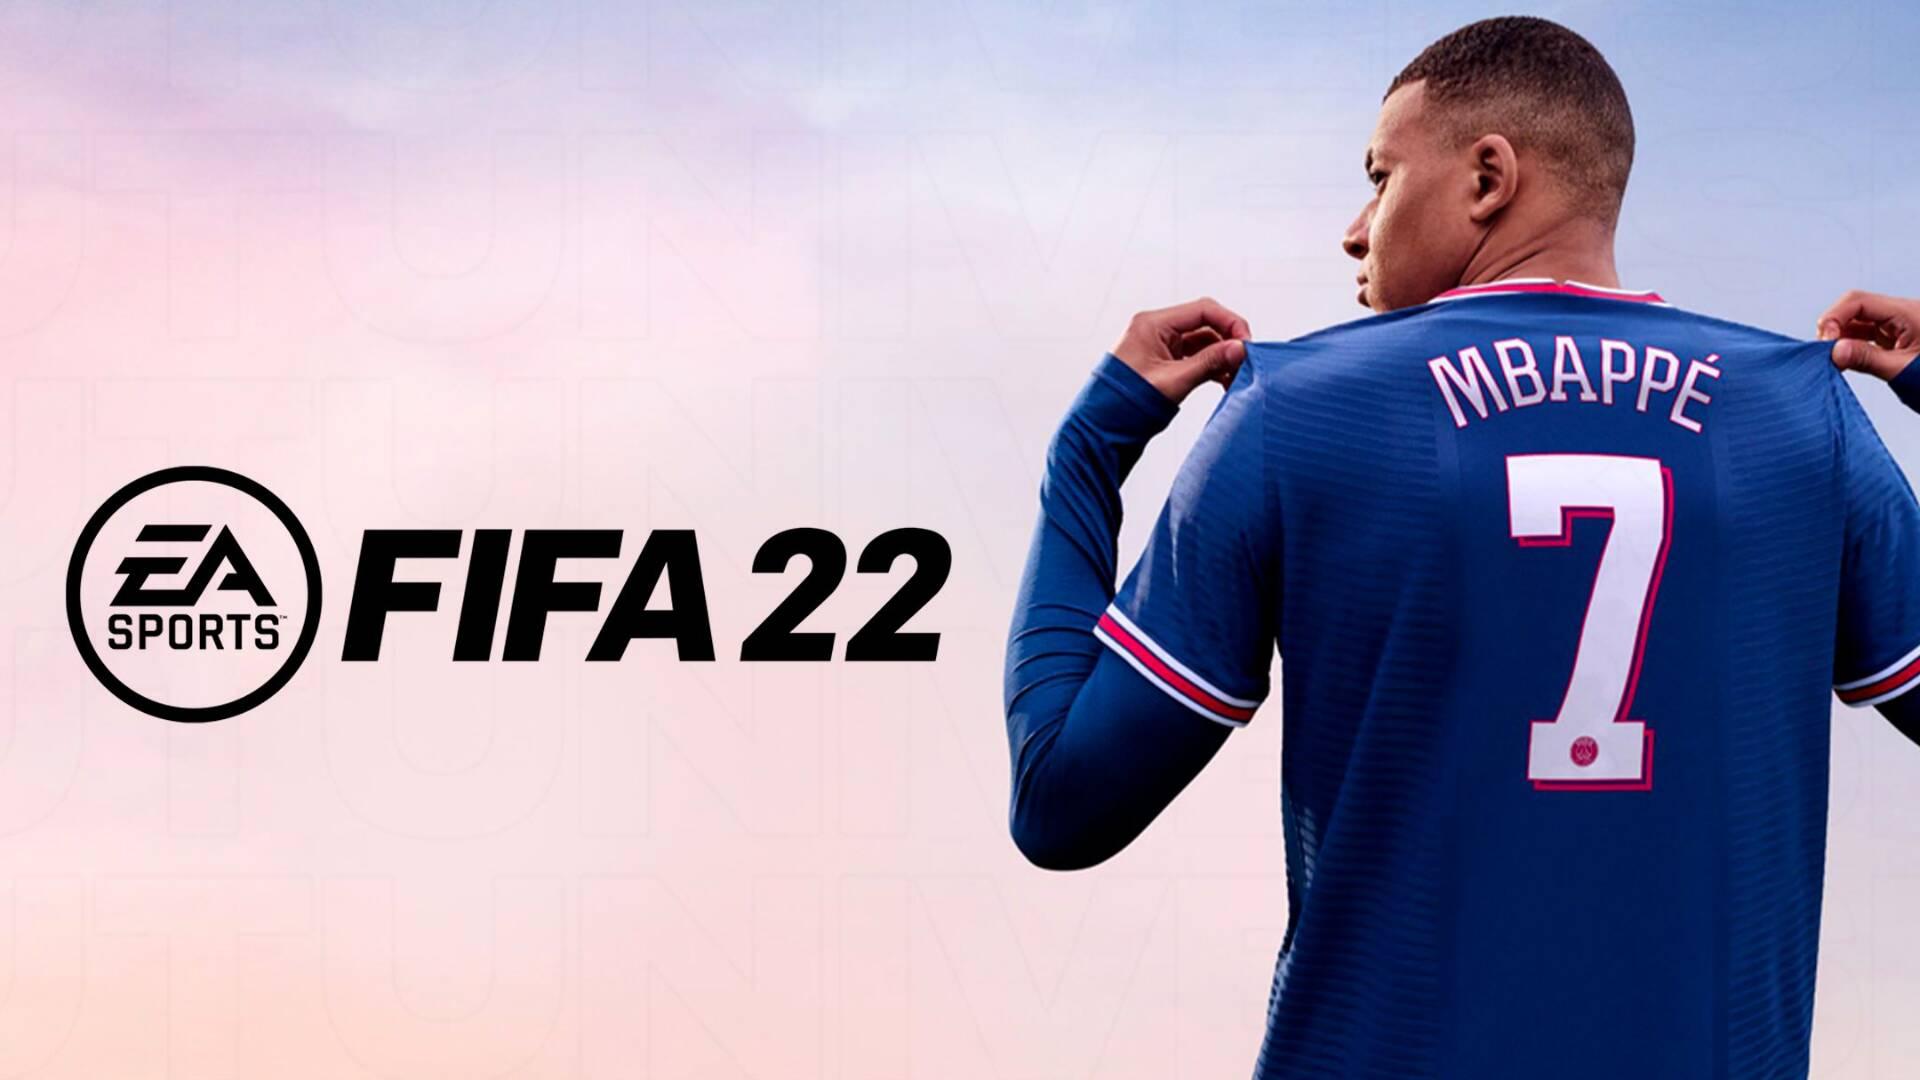 FIFA 22 feature image